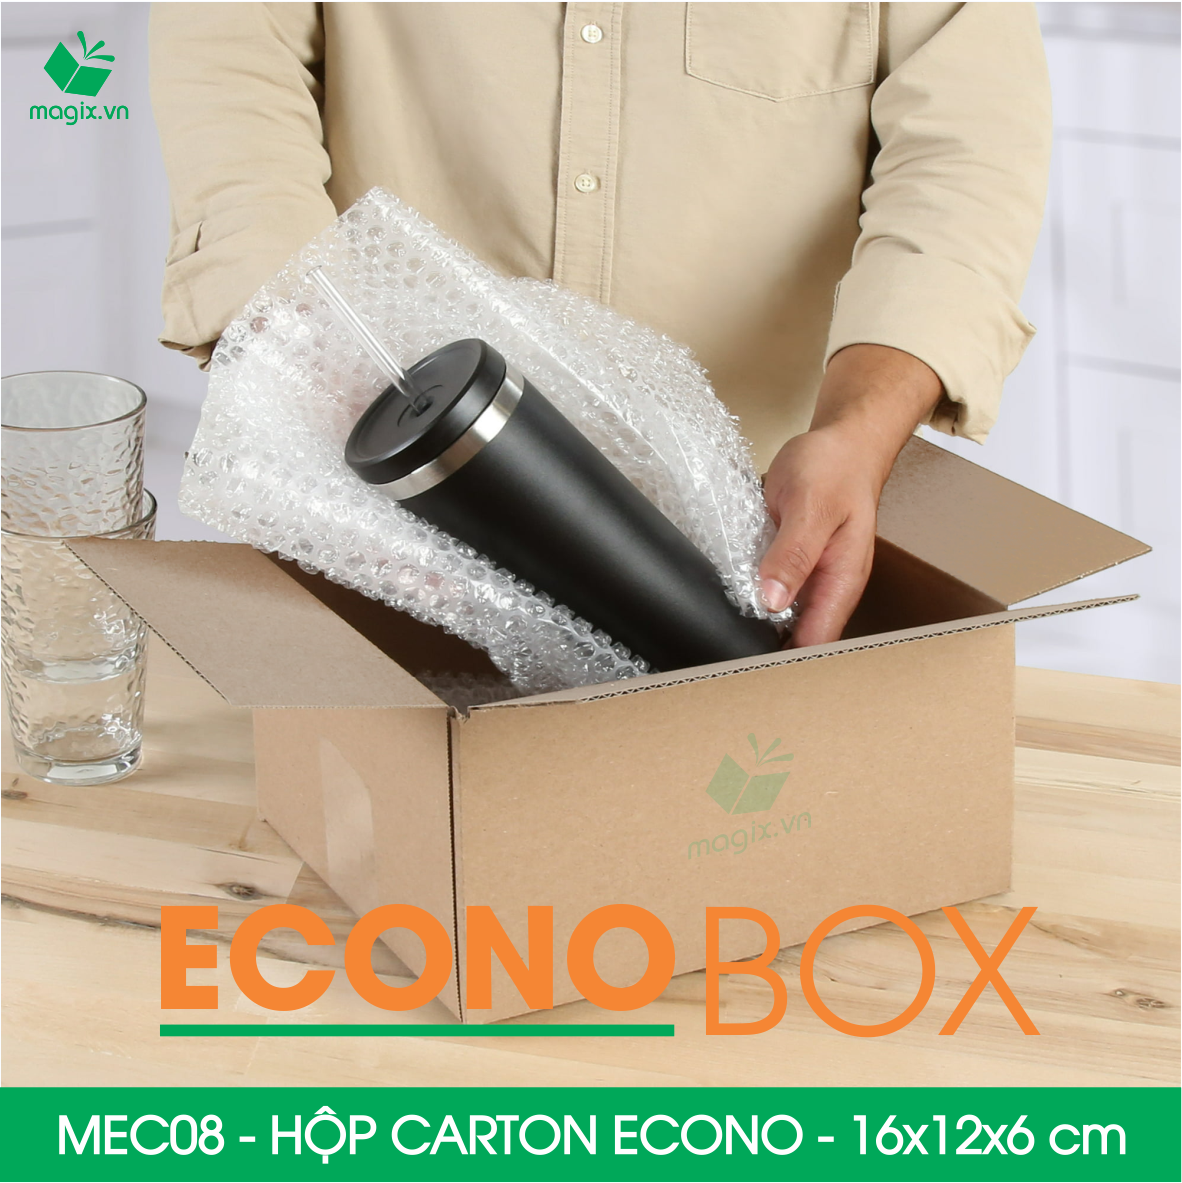 MEC08 - 16x12x6 cm - Combo 100 thùng hộp carton trơn siêu tiết kiệm ECONO